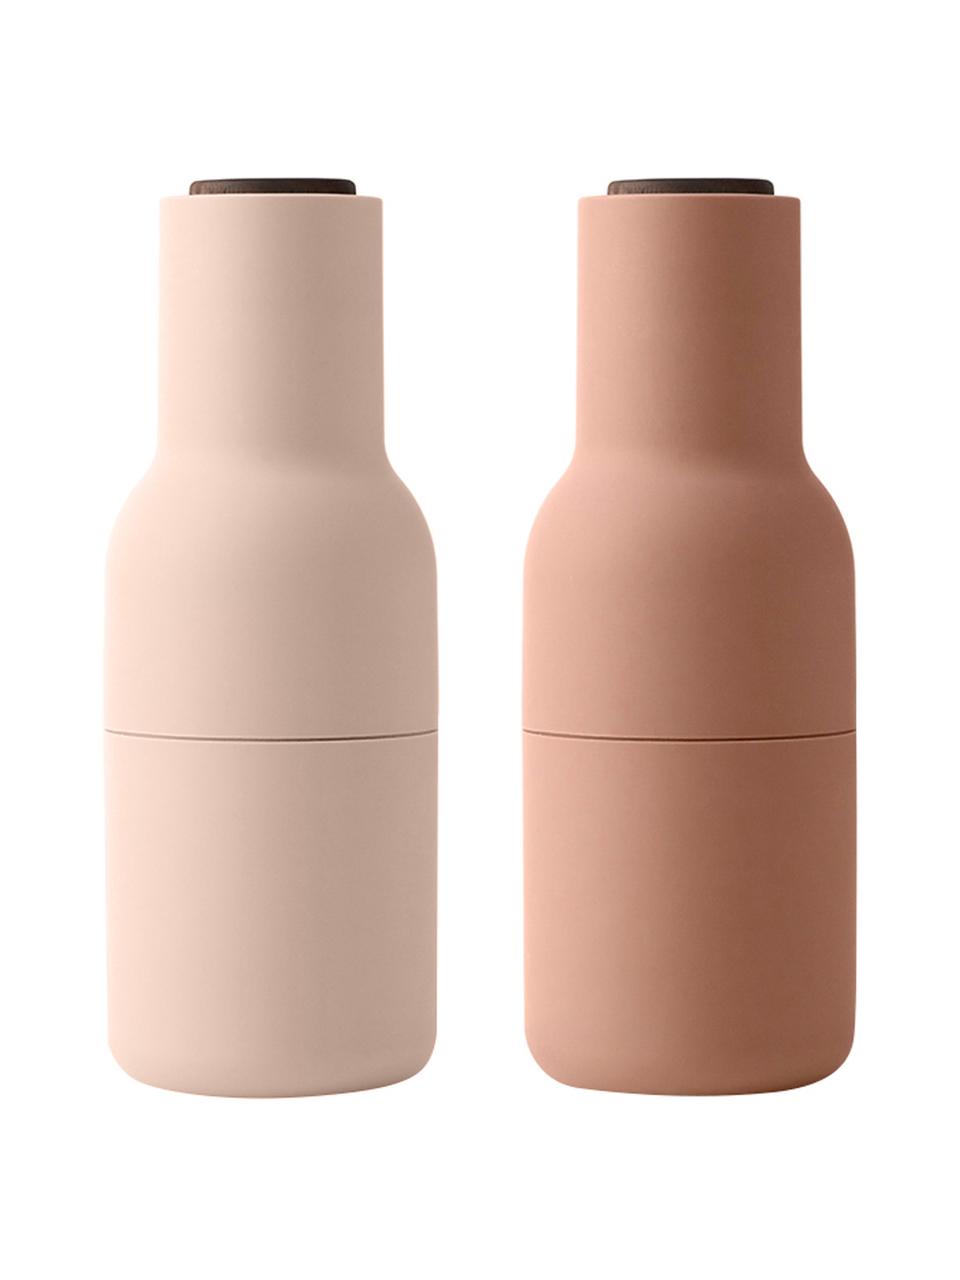 Designer zout- en pepermolen Bottle Grinder in roze tinten met walnoothouten deksel, Frame: kunststof, Deksel: walnoothout, Rozetinten, Ø 8 x H 21 cm